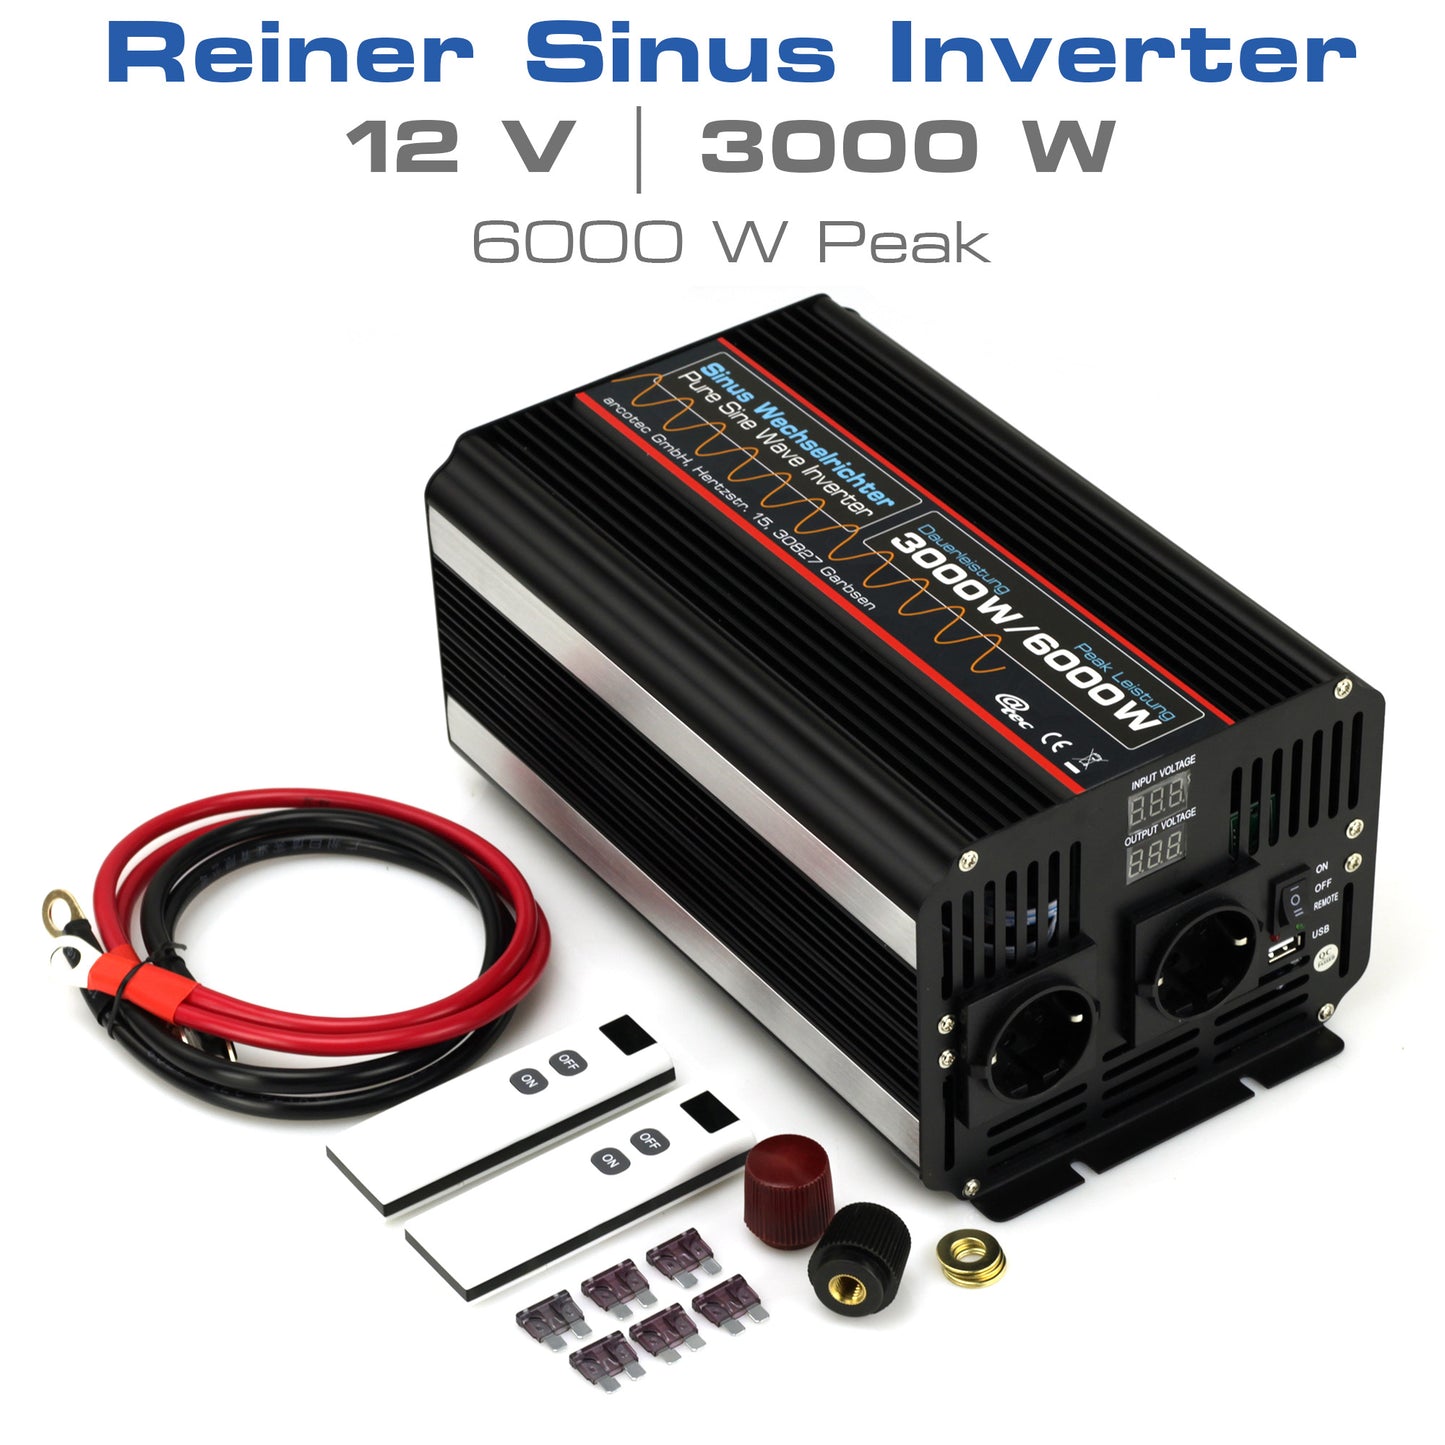 @tec Reiner Sinus Wechselrichter 2000W/3000W Spannungswandler Inverter mit Fernbedienung 12V 24V Peak Leistung 4000W/6000W